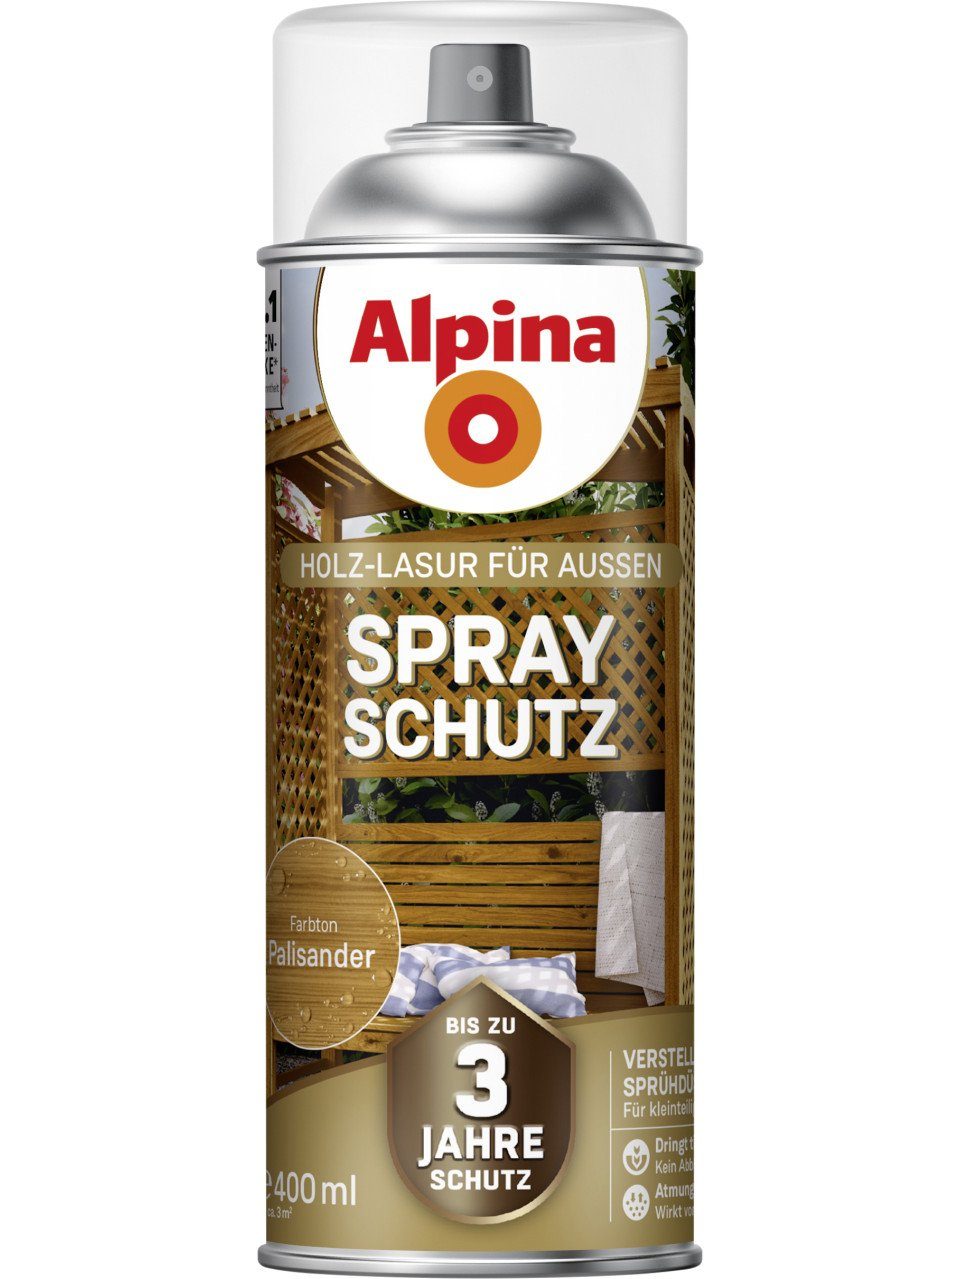 Alpina Lasur Alpina 0,4 palisander L Spray-Schutz